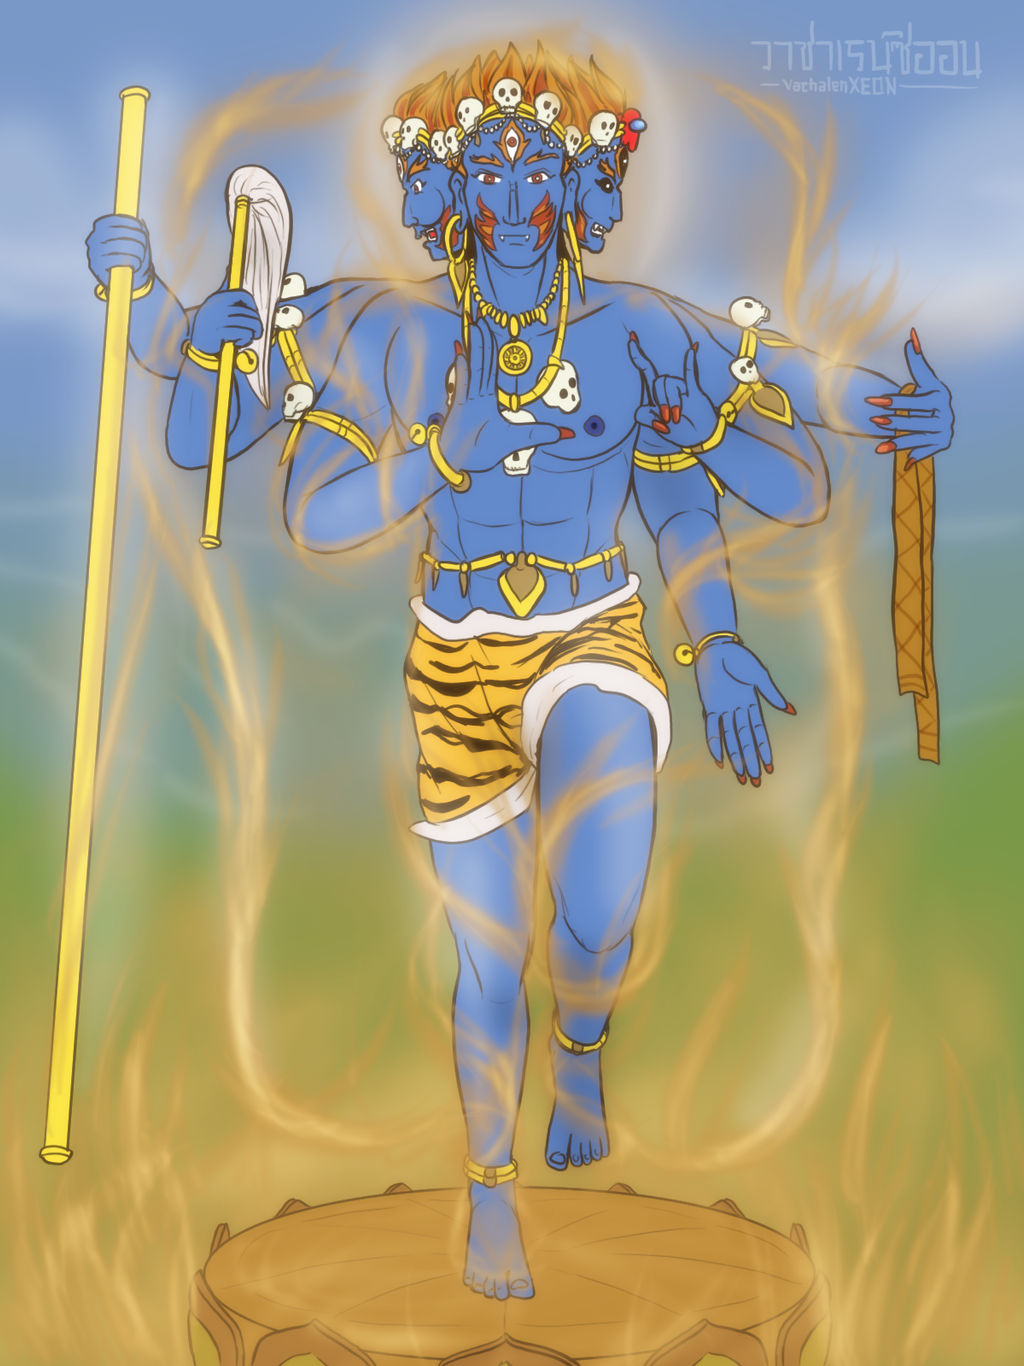 The ultimate cruel Dharmapala by VachalenXEON on DeviantArt